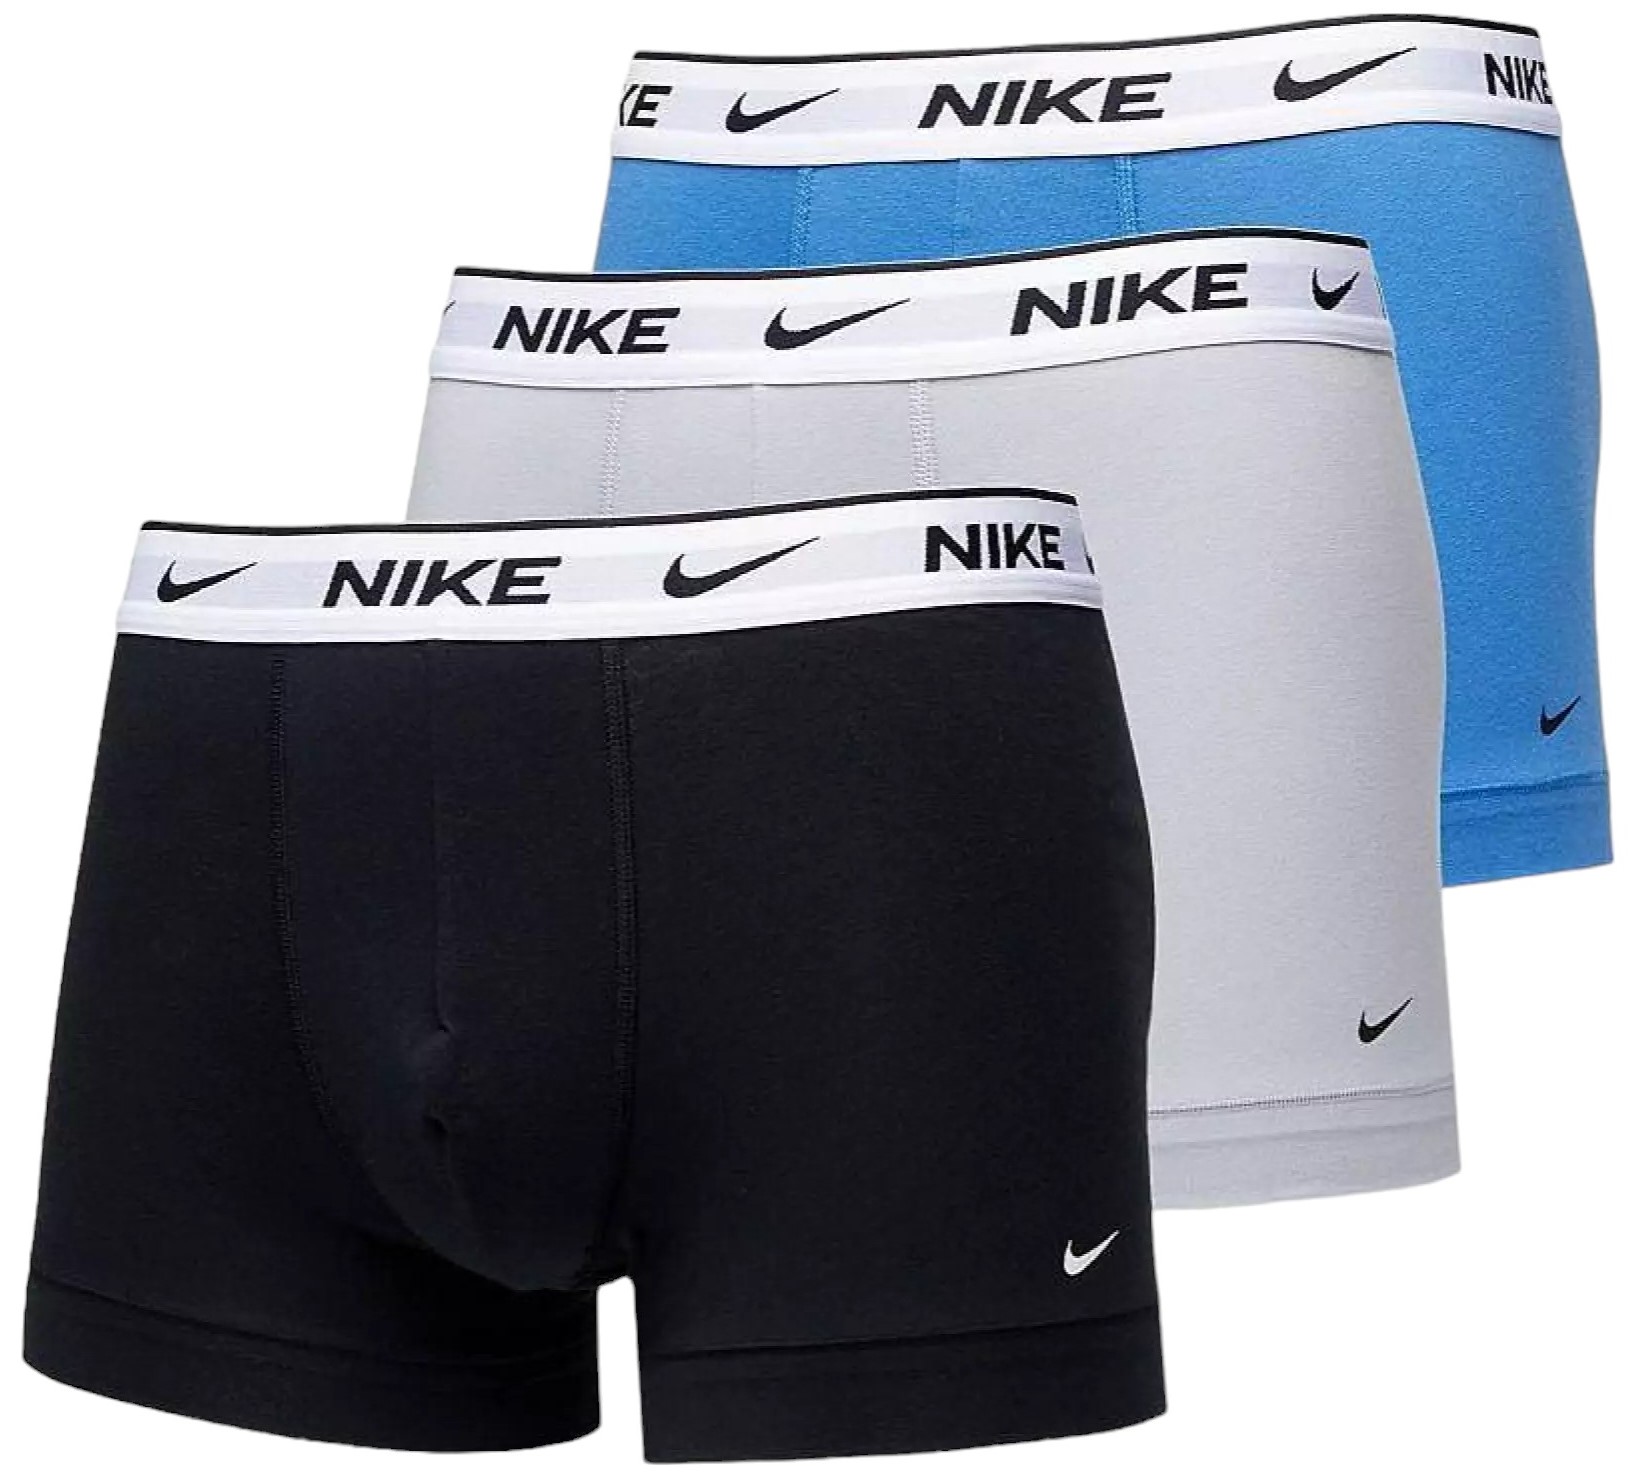 Boxer shorts Nike TRUNK 3PK, F8G